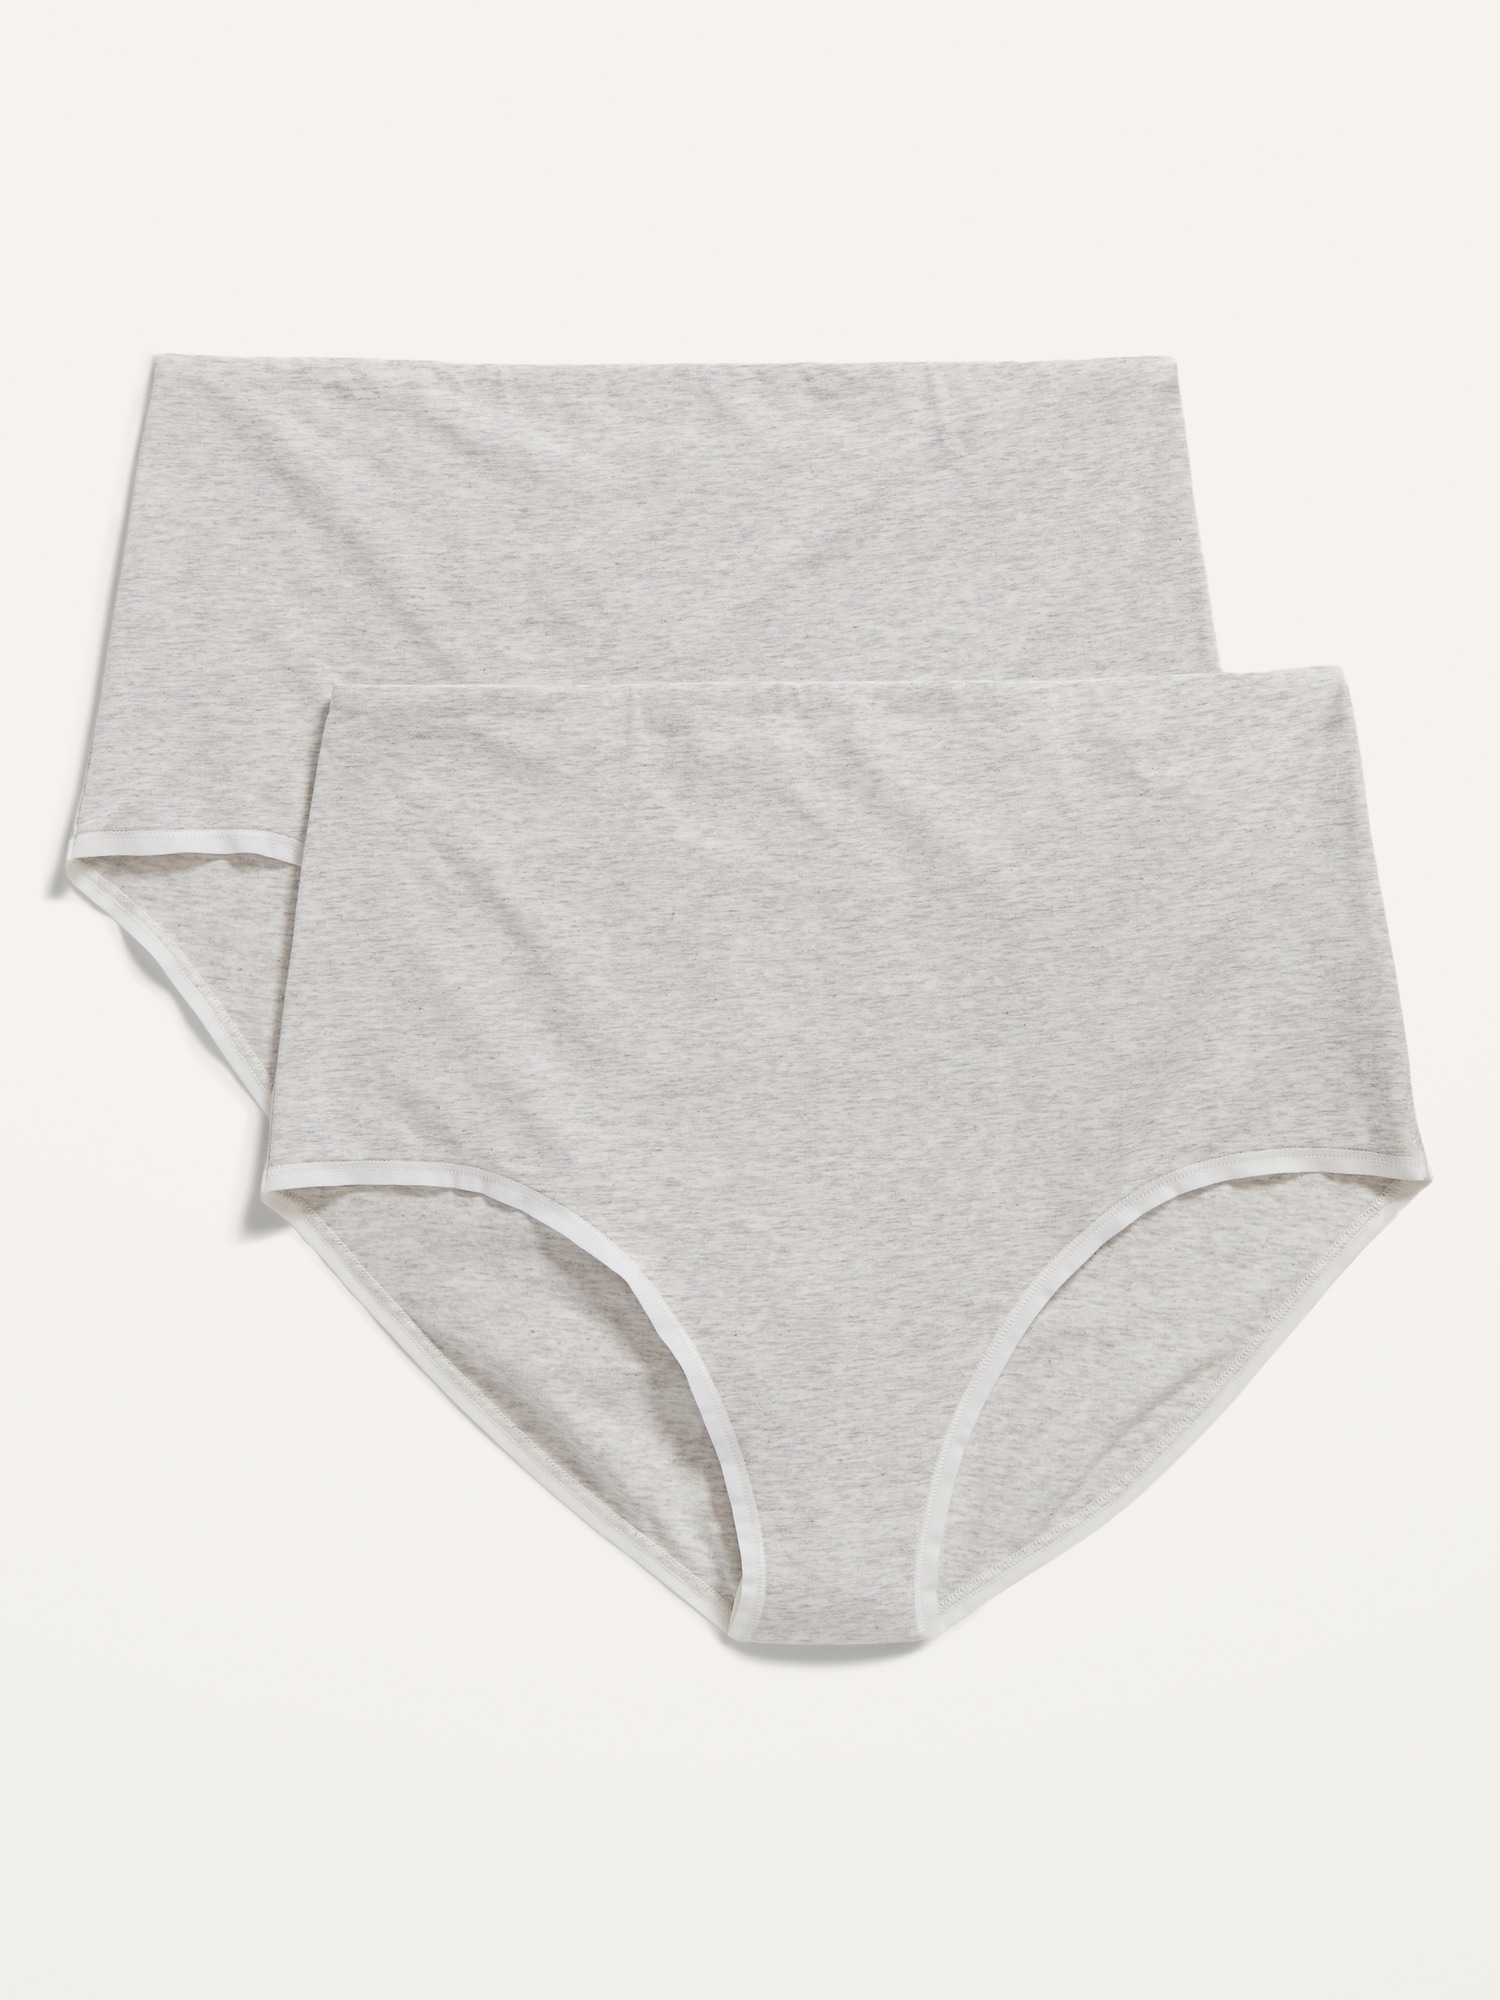 2 Pcs Disposable Underwear Maternity Pregnancy Panties Cotton